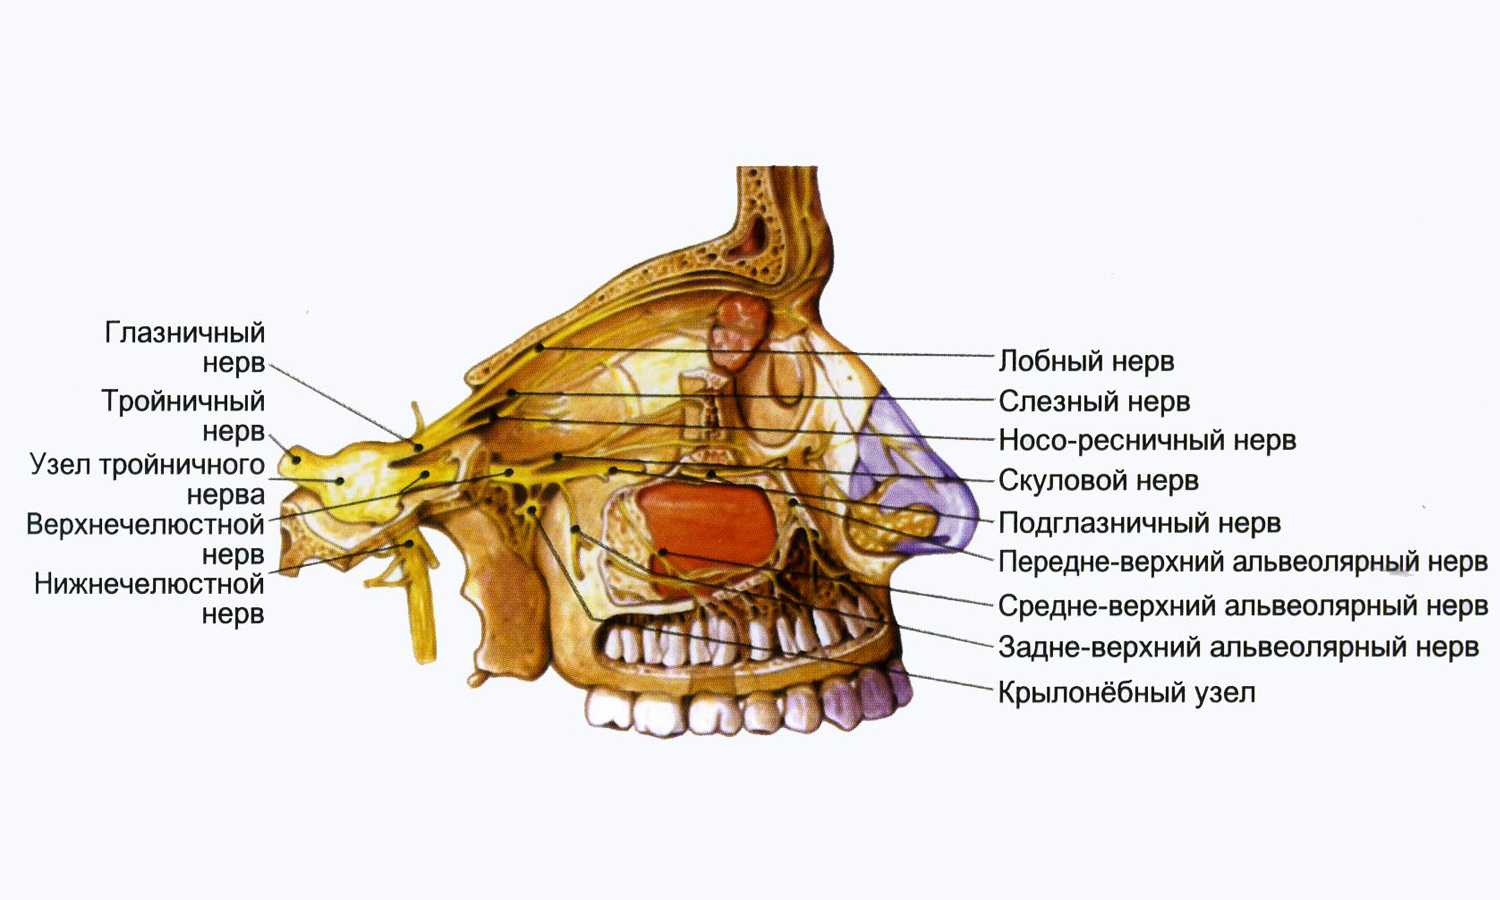 Нервы лицевой области. Крылонебный узел тройничного нерва. Ветви тройничного нерва анатомия. Анатомия глазной ветви тройничного нерва. Лицевая ветвь тройничного нерва.